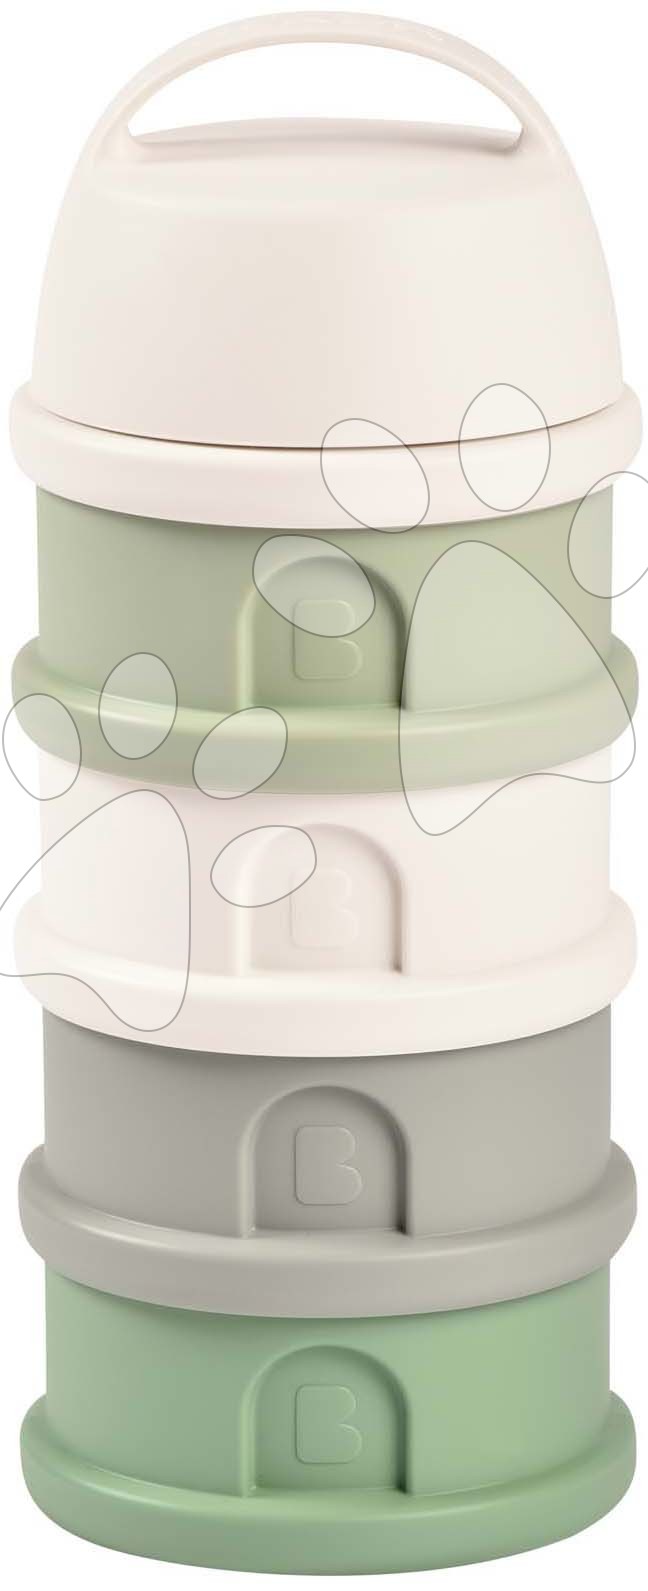 Dávkovač sušeného mléka Formula Milk Container Beaba 4dílný Cotton White Sage Green šedo-zelený od 0 měsíců